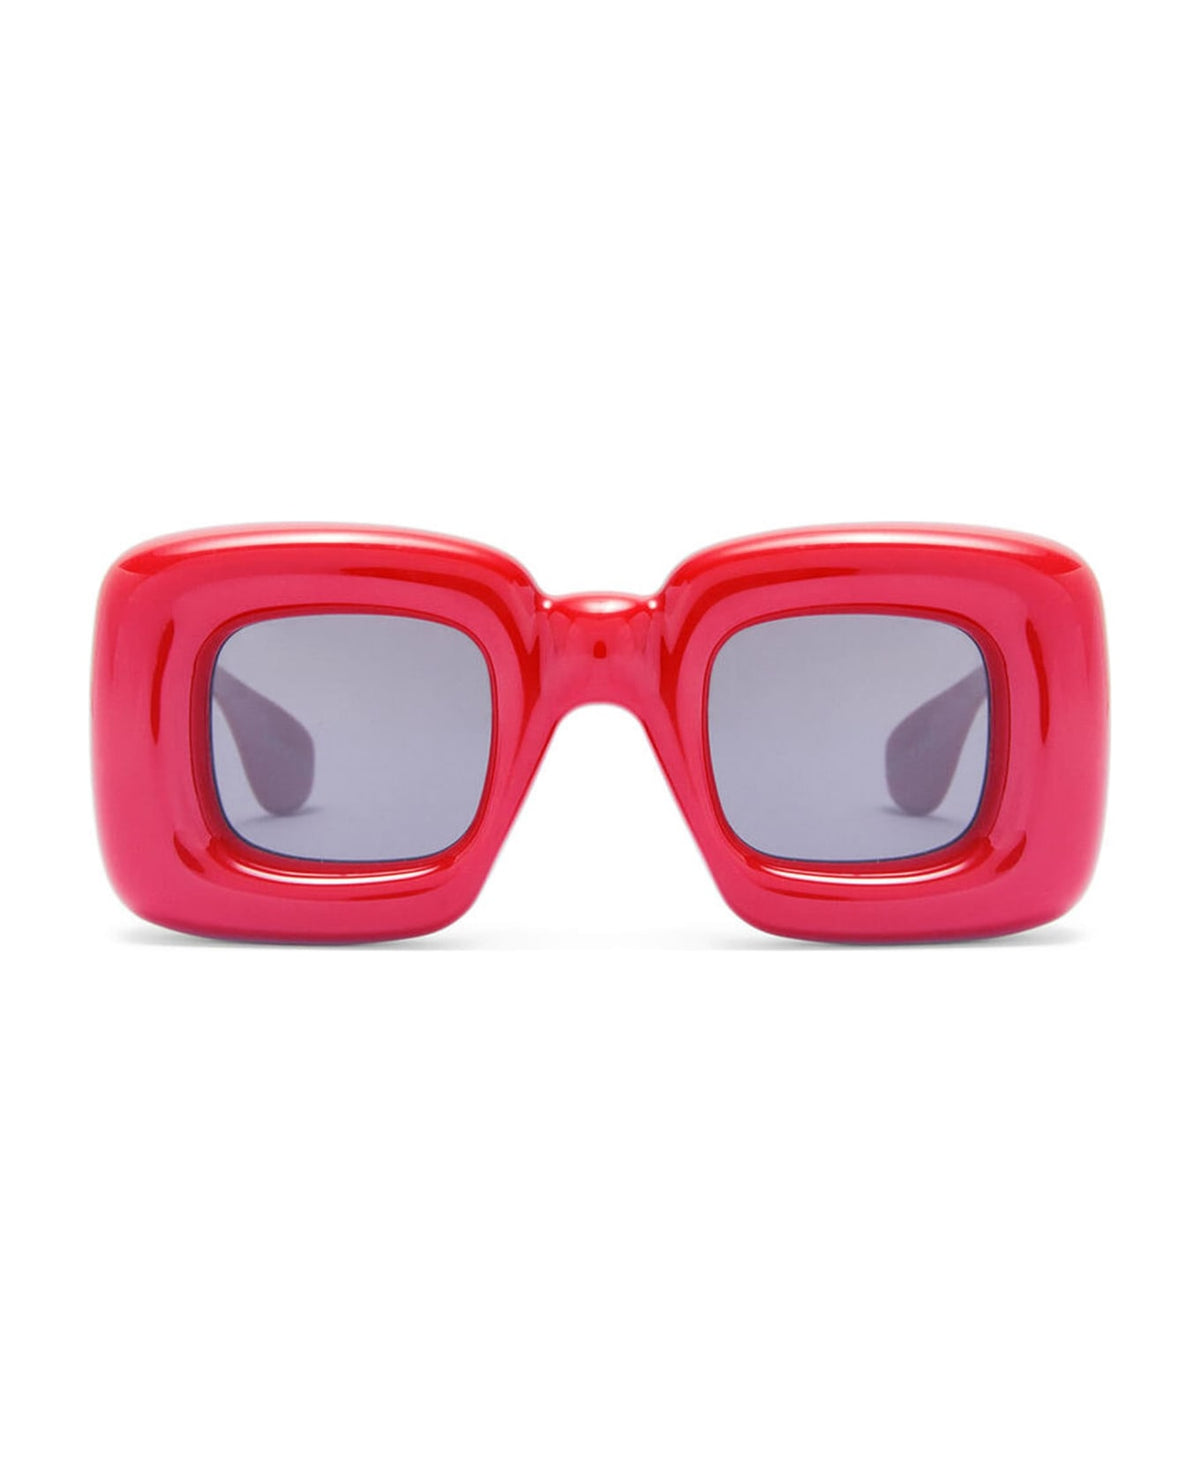 Lw40098i - Red Sunglasses